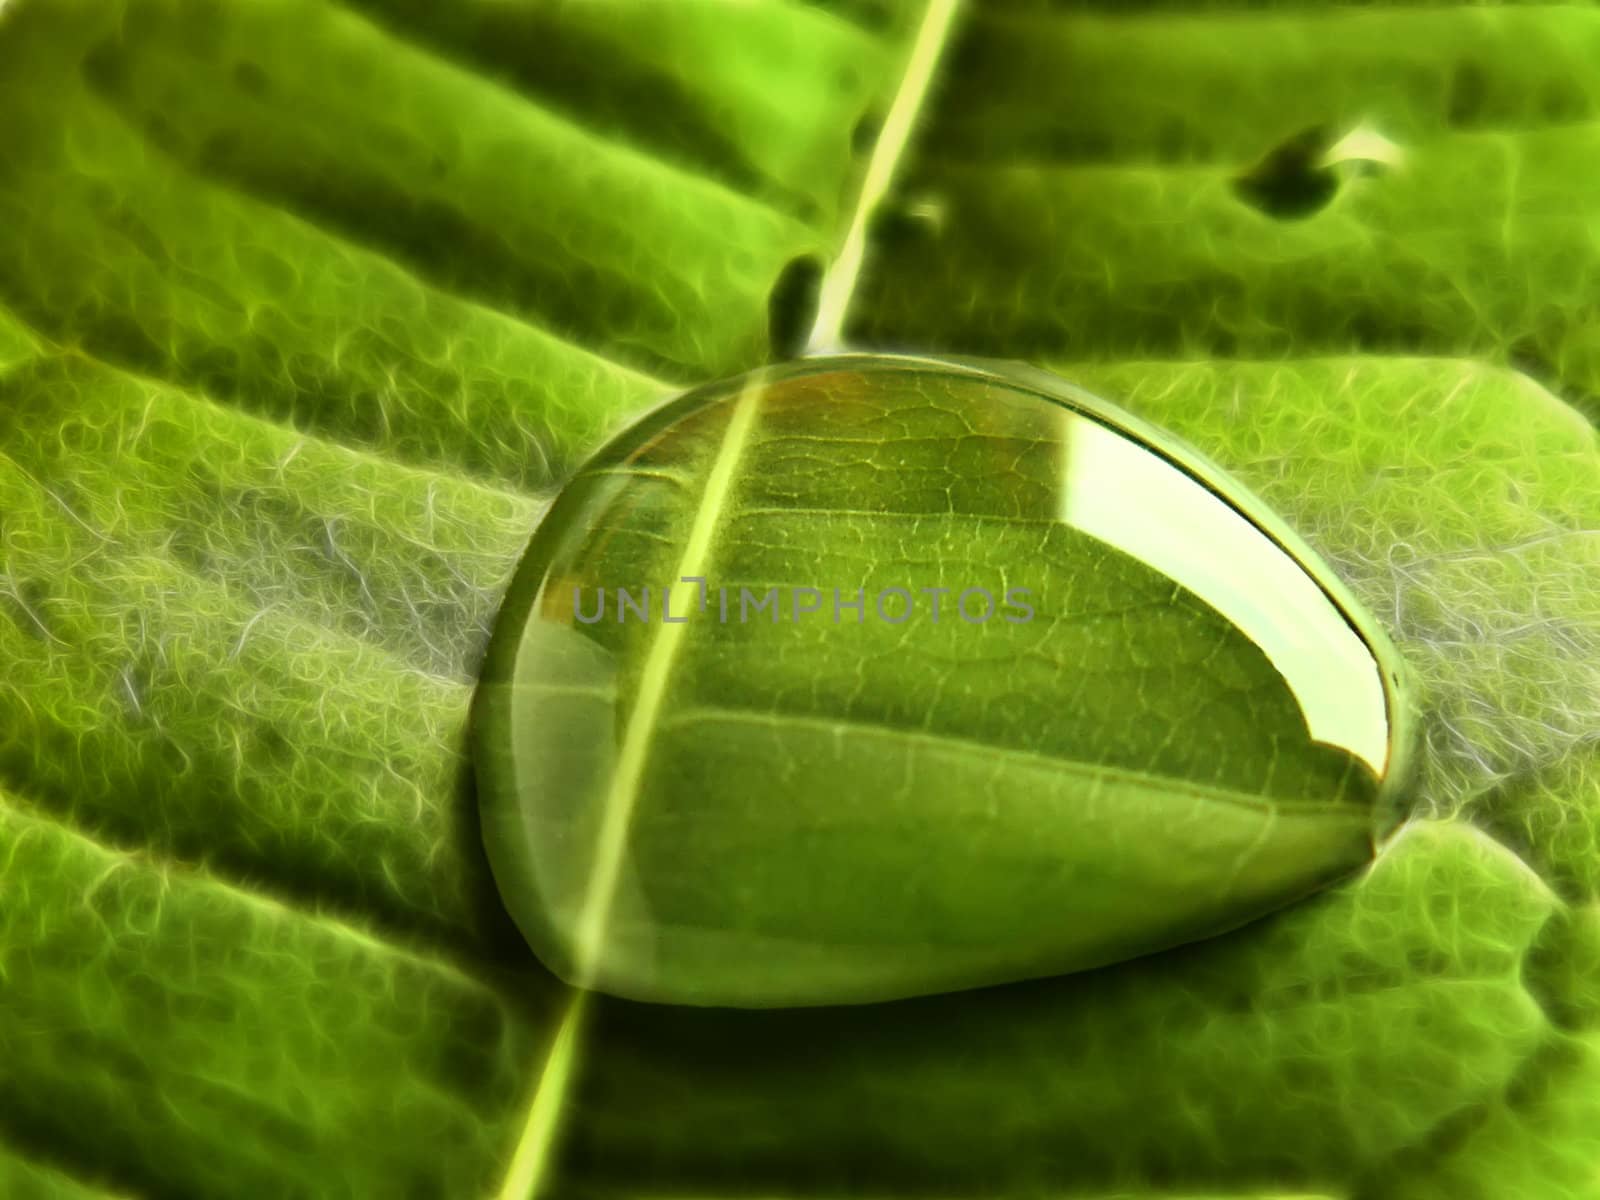 water bubble on a leaf by njaj